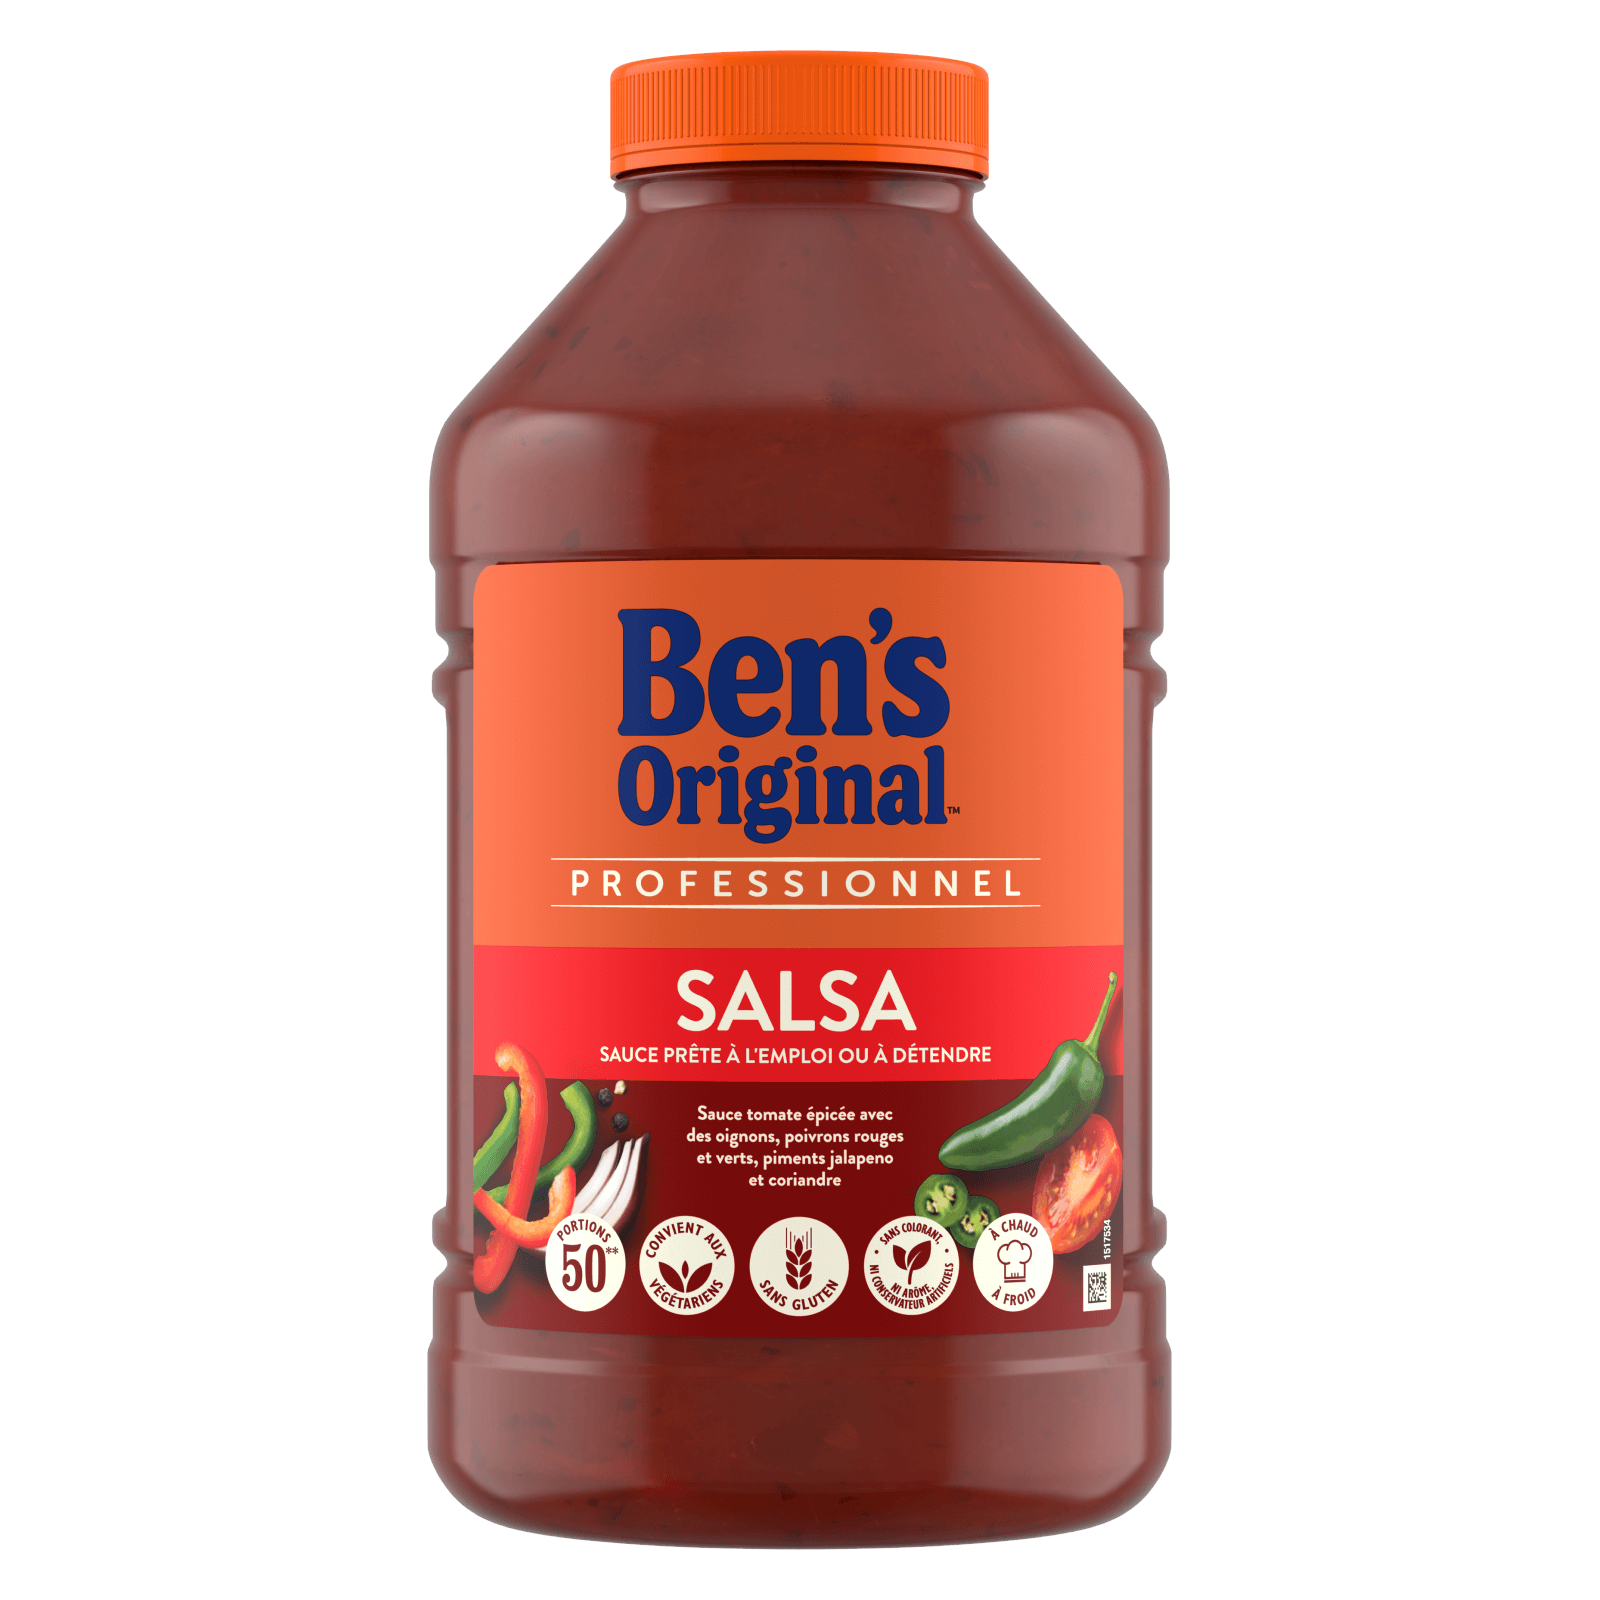 Ben's Original Sauce Salsa